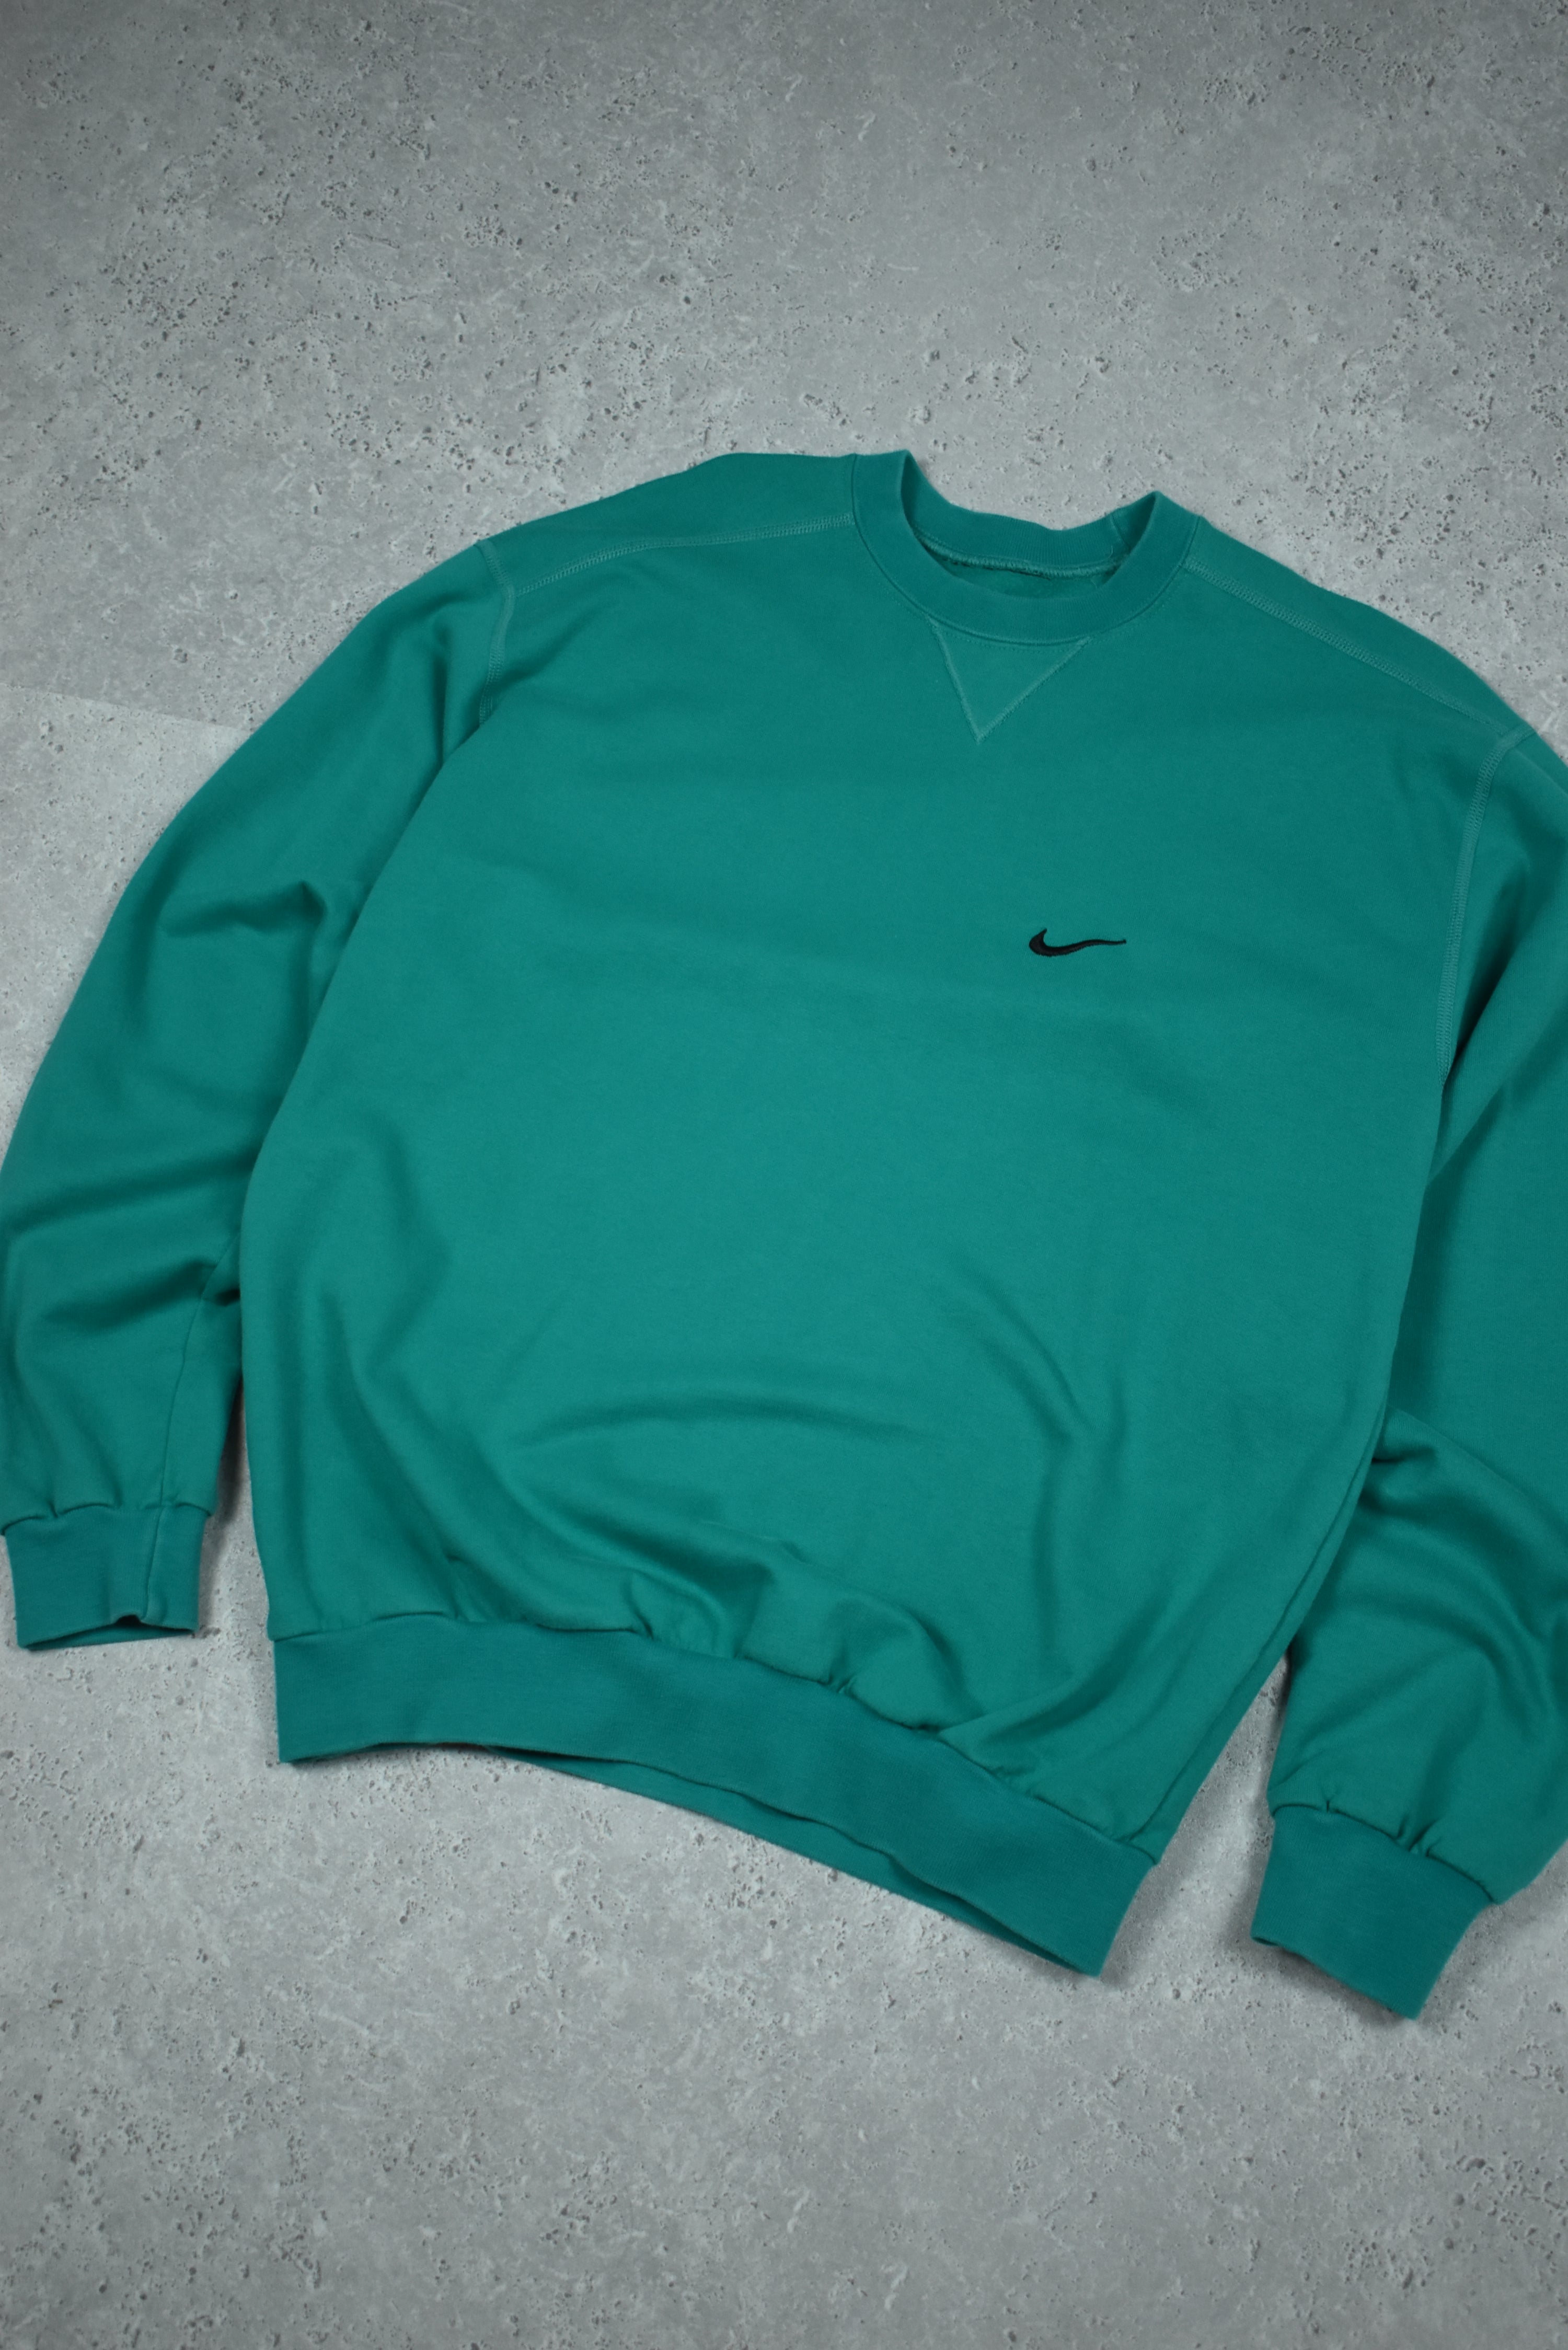 Vintage Nike Embroidery Swoosh Sweatshirt Medium